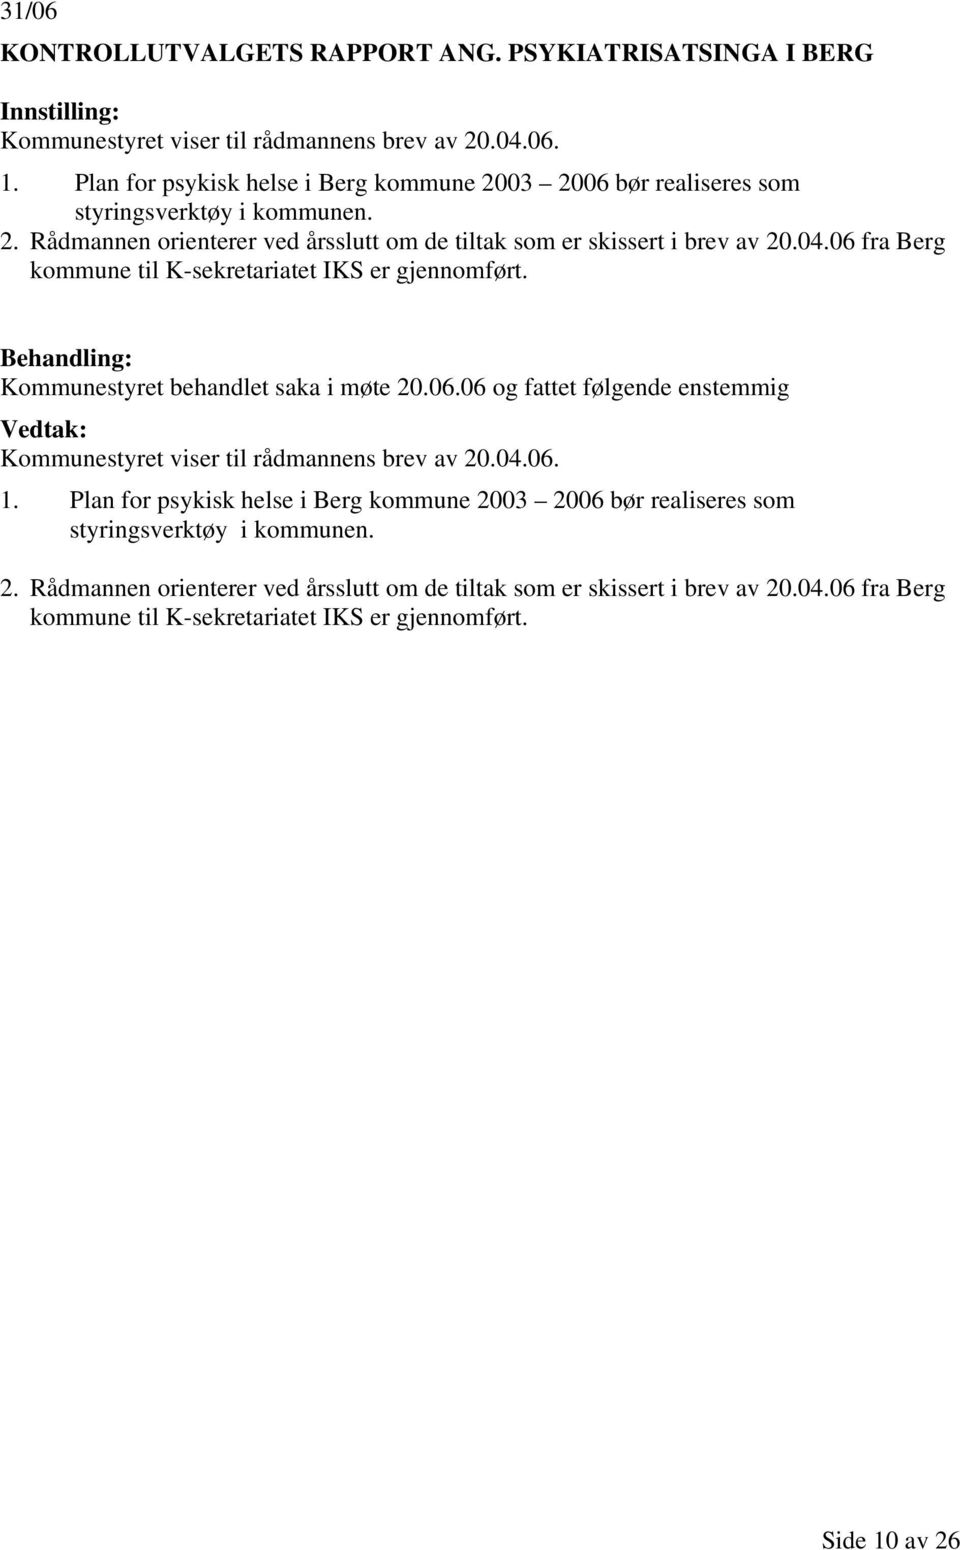 06 fra Berg kommune til K-sekretariatet IKS er gjennomført. Kommunestyret behandlet saka i møte 20.06.06 og fattet følgende enstemmig Kommunestyret viser til rådmannens brev av 20.04.